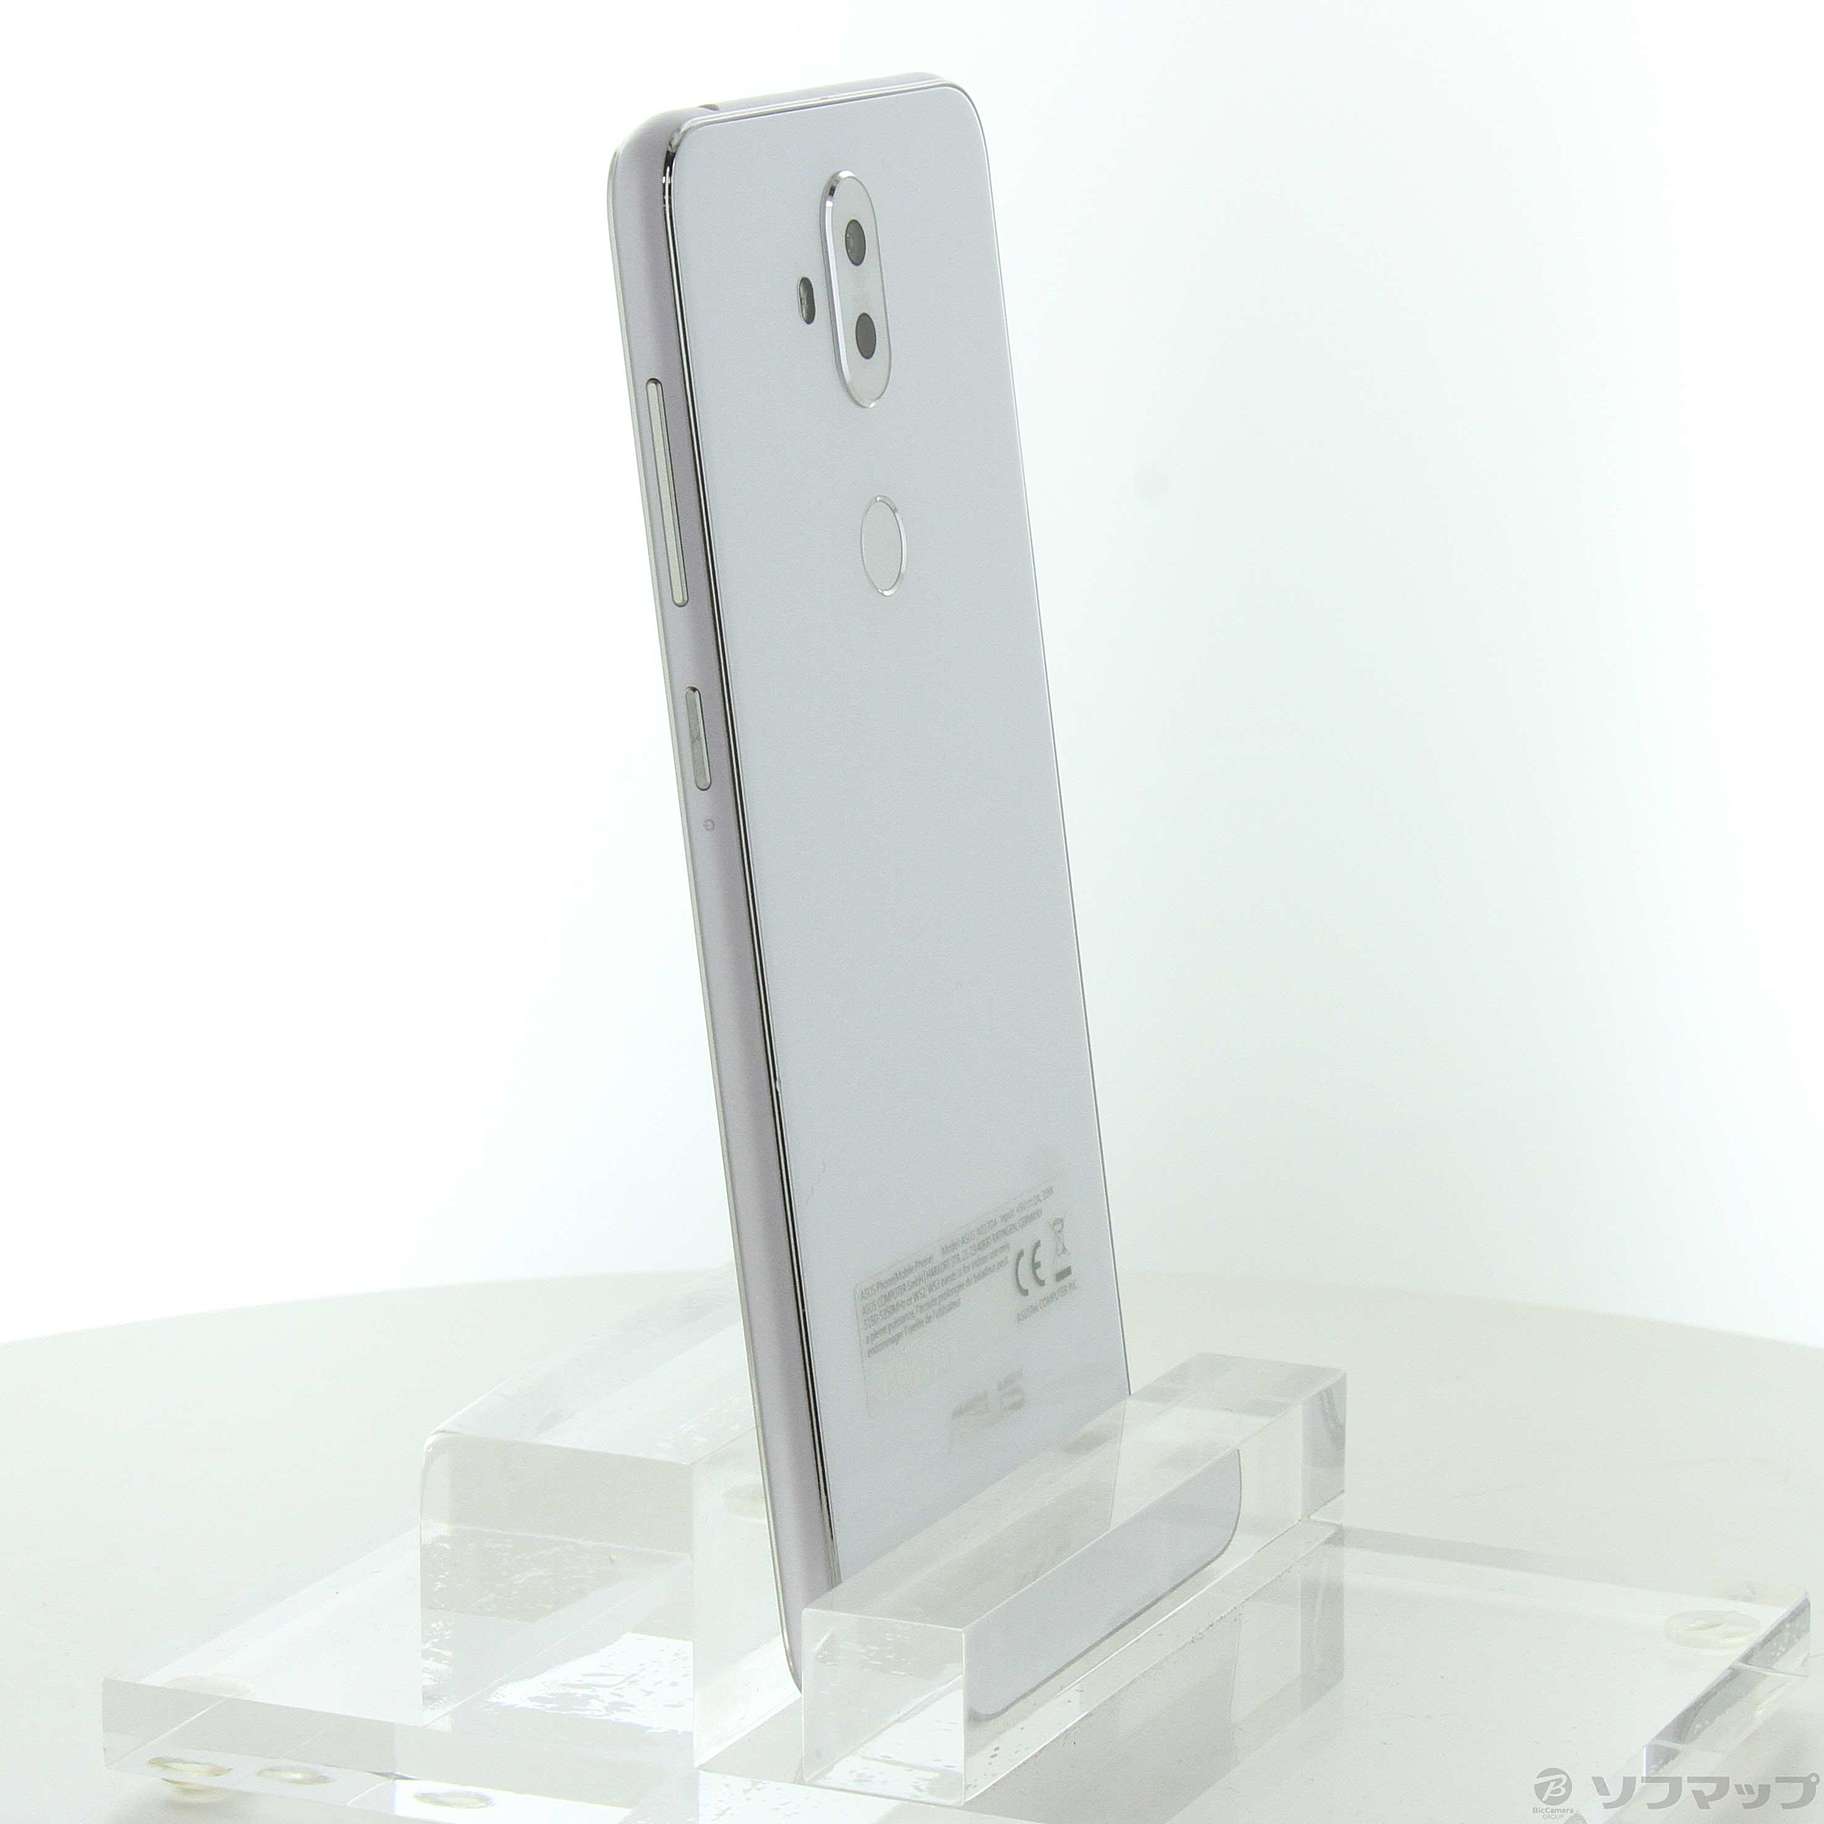 ZenFone 5Q 64GB ムーンライトホワイト ZC600KL-WH64S4 SIMフリー